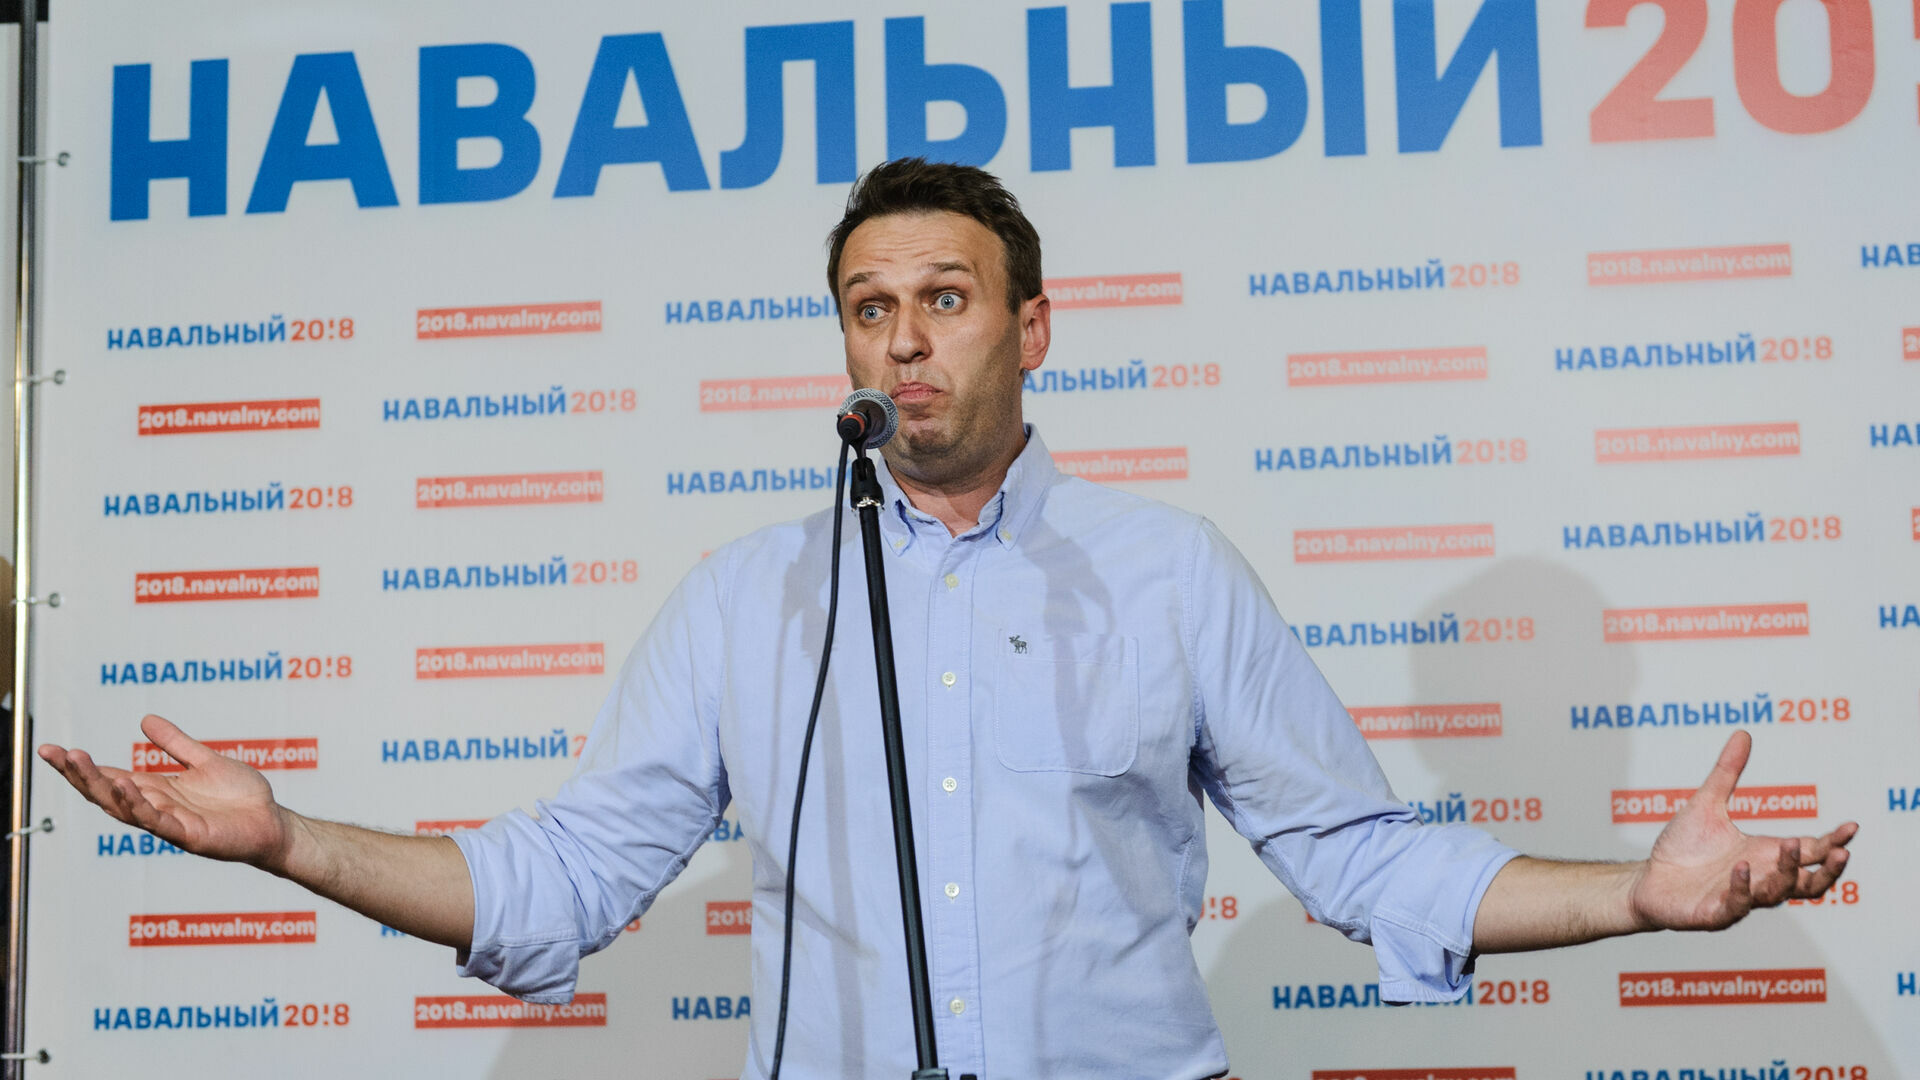 Алексея Навального задержали на выходе из спецприемника, где он отбыл 30 суток ареста